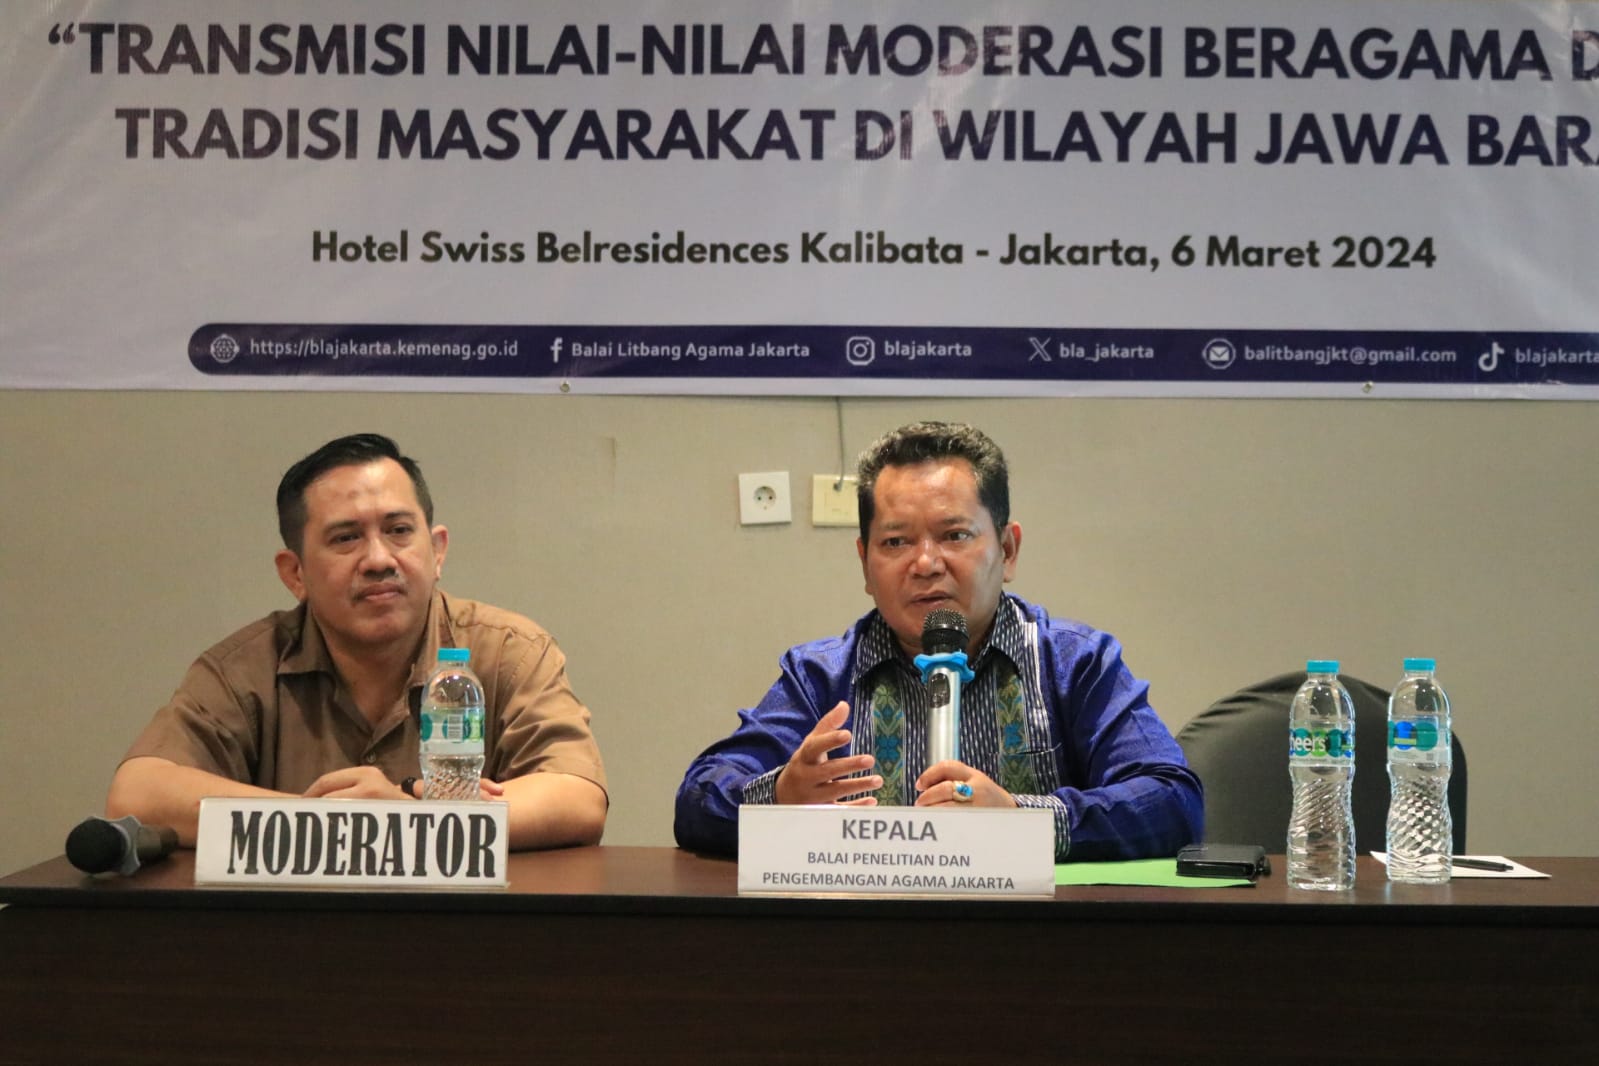 Seminar Hasil BLAJ: Mengungkap Transmisi Nilai-Nilai Moderasi Beragama dalam Tradisi dan Budaya di Jawa Barat